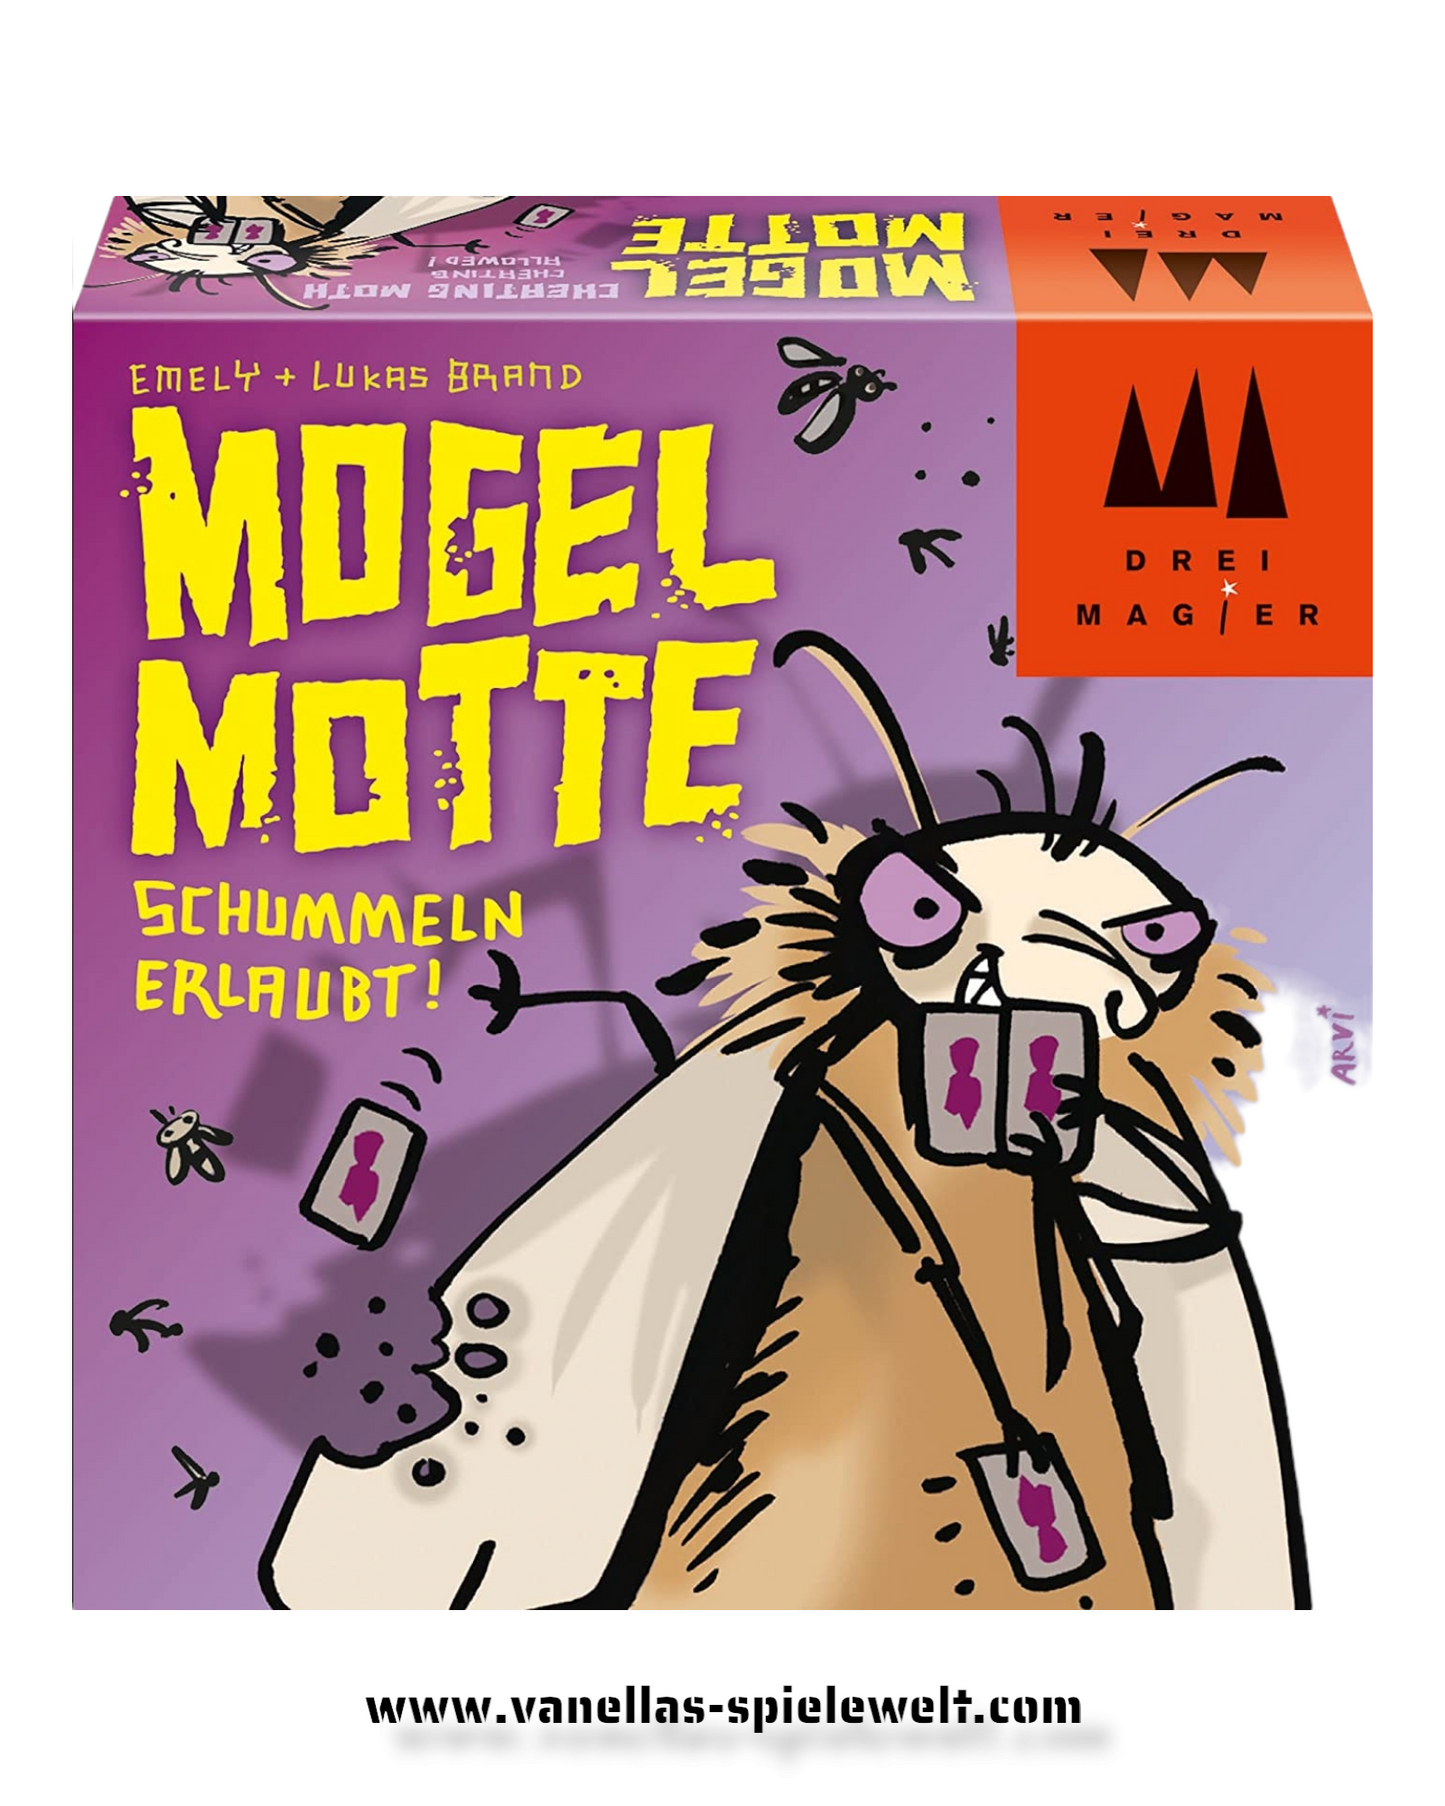 Mogel Motte, Die drei Magier Vanellas Spielewelt